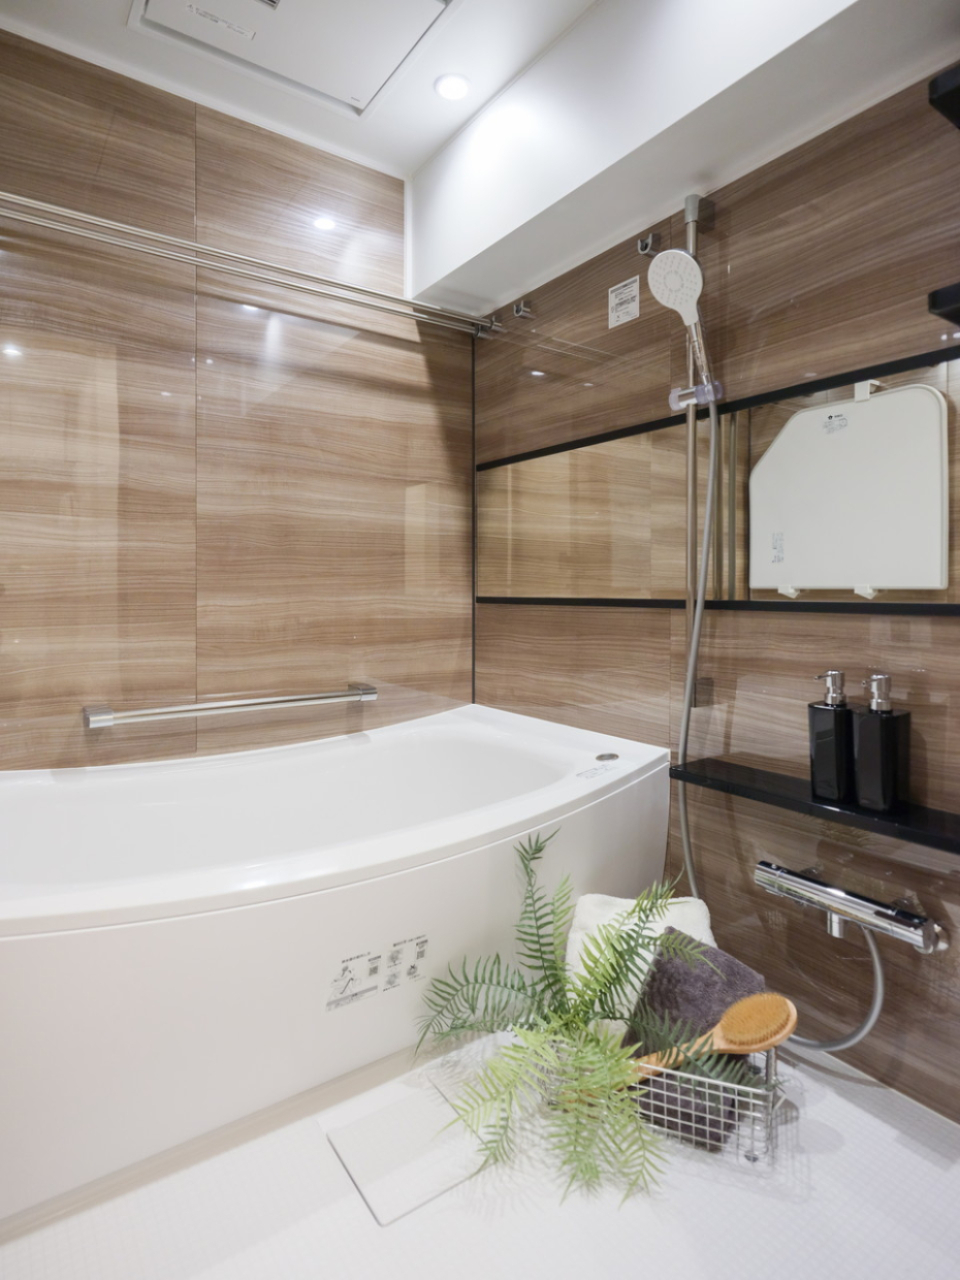 光沢感のある木目の壁とアーチの効いた浴槽が素敵な浴室